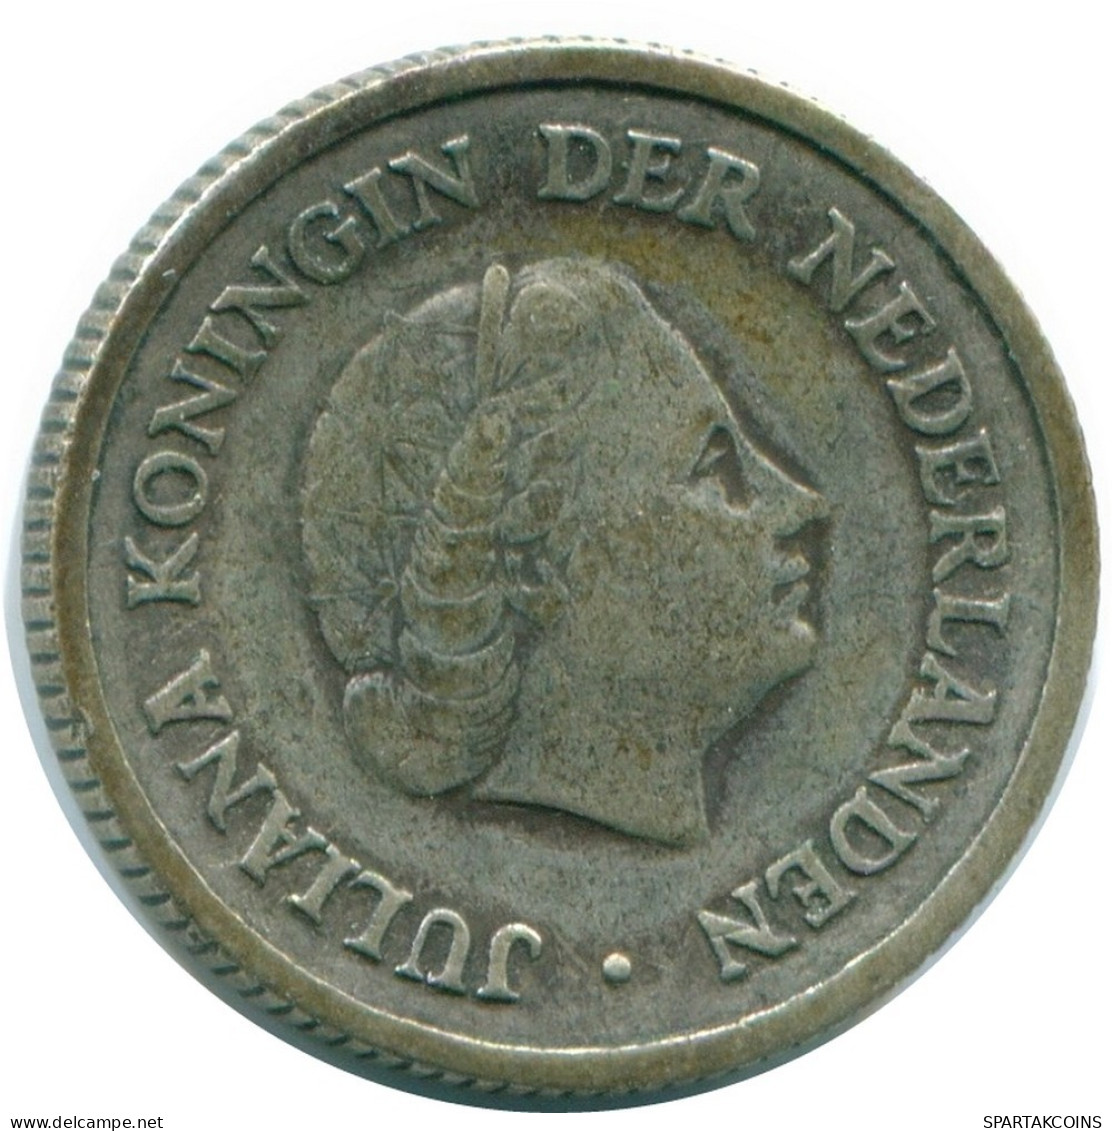 1/4 GULDEN 1956 NIEDERLÄNDISCHE ANTILLEN SILBER Koloniale Münze #NL10932.4.D.A - Niederländische Antillen